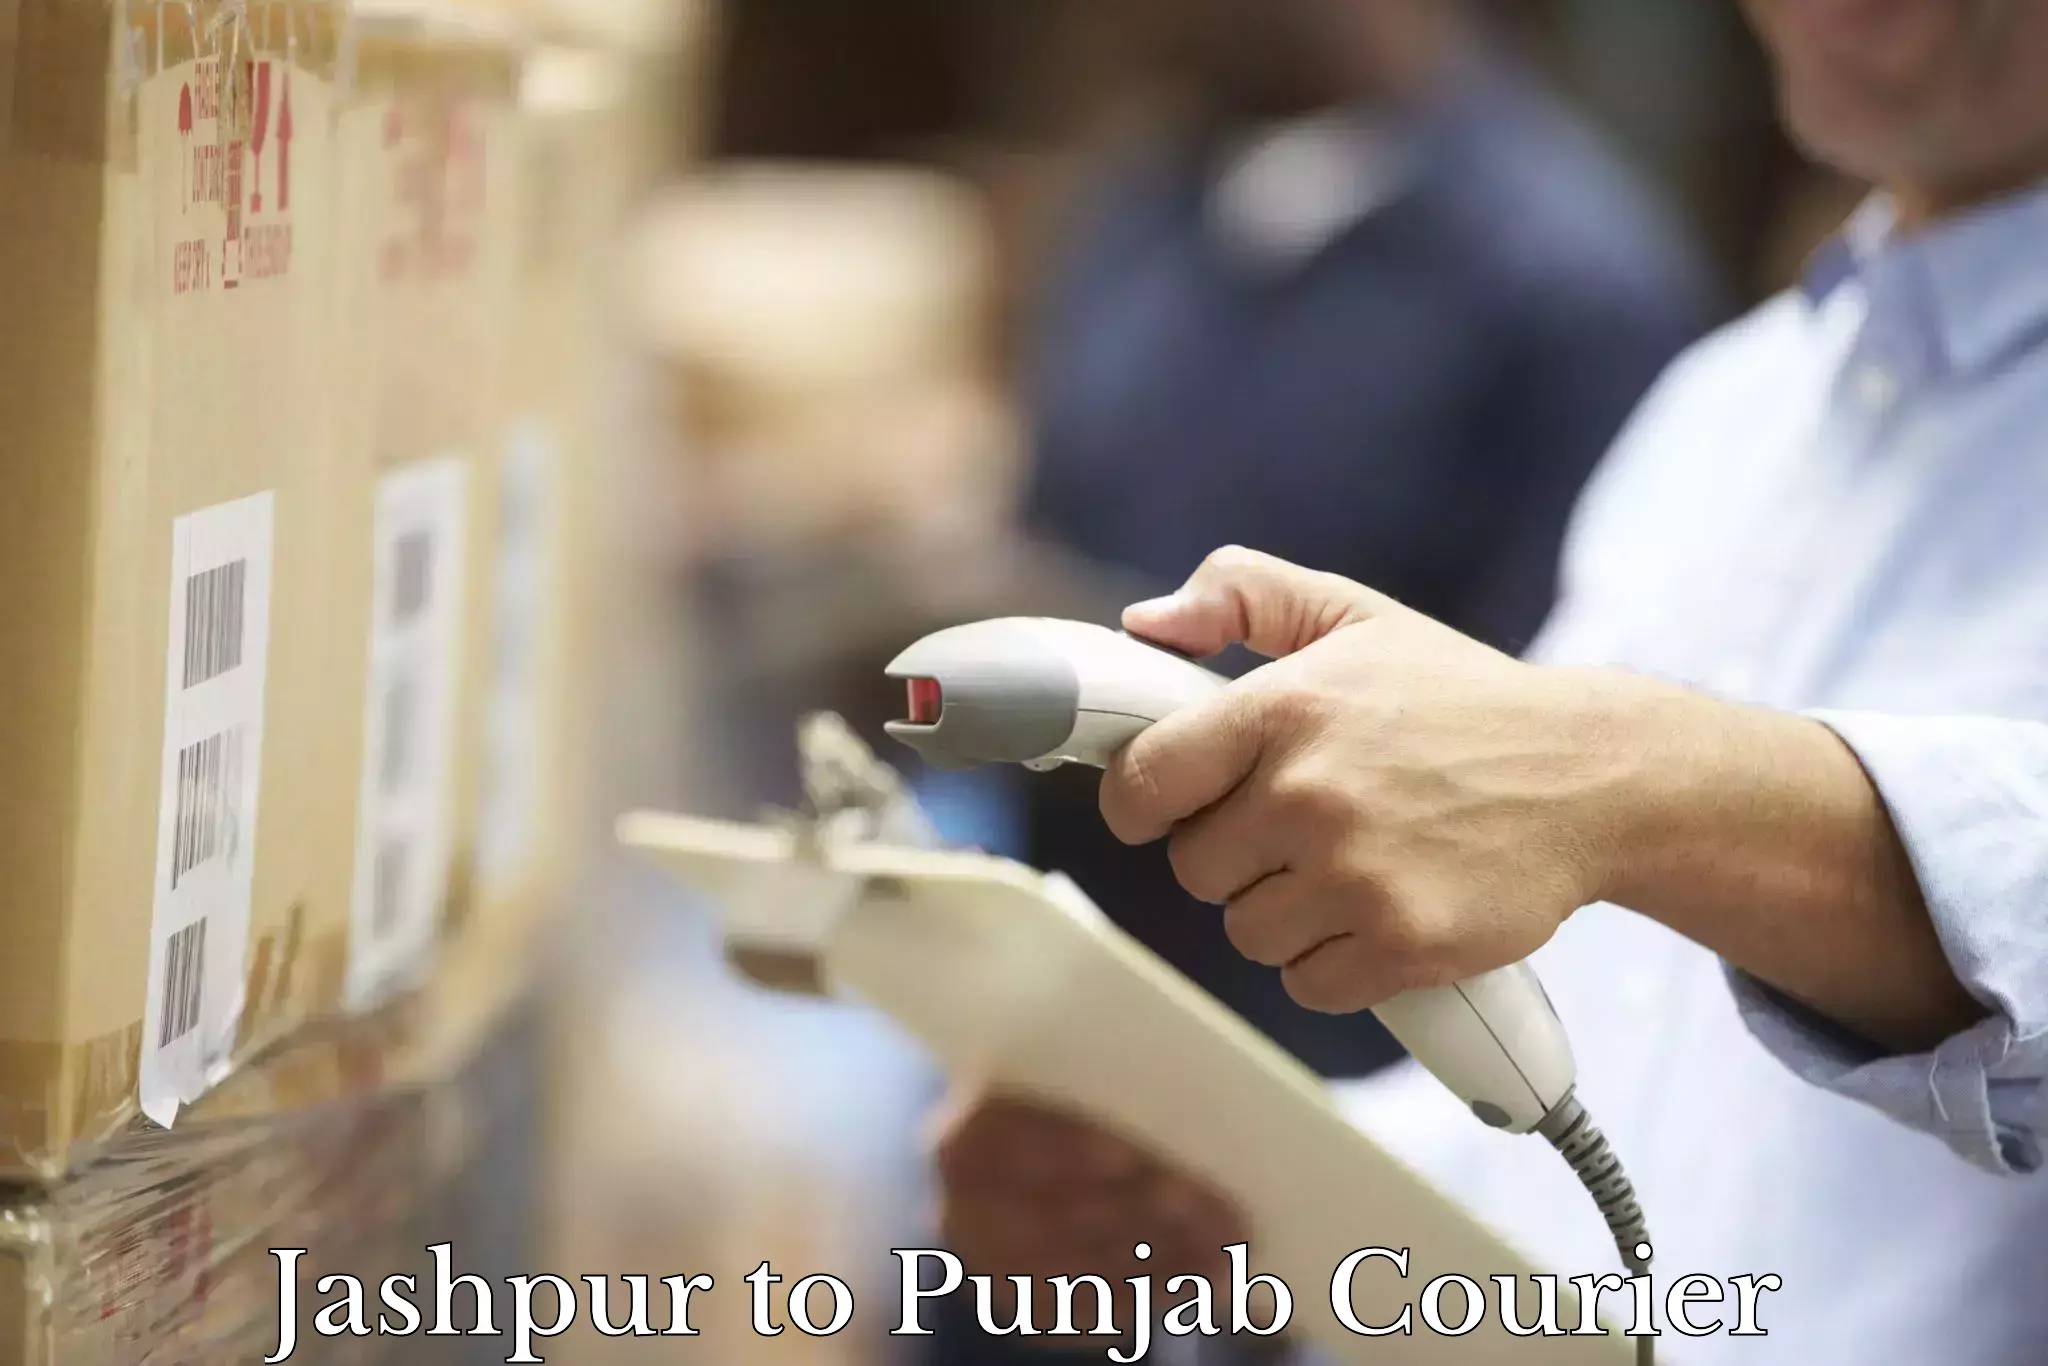 Courier service booking Jashpur to Sirhind Fatehgarh